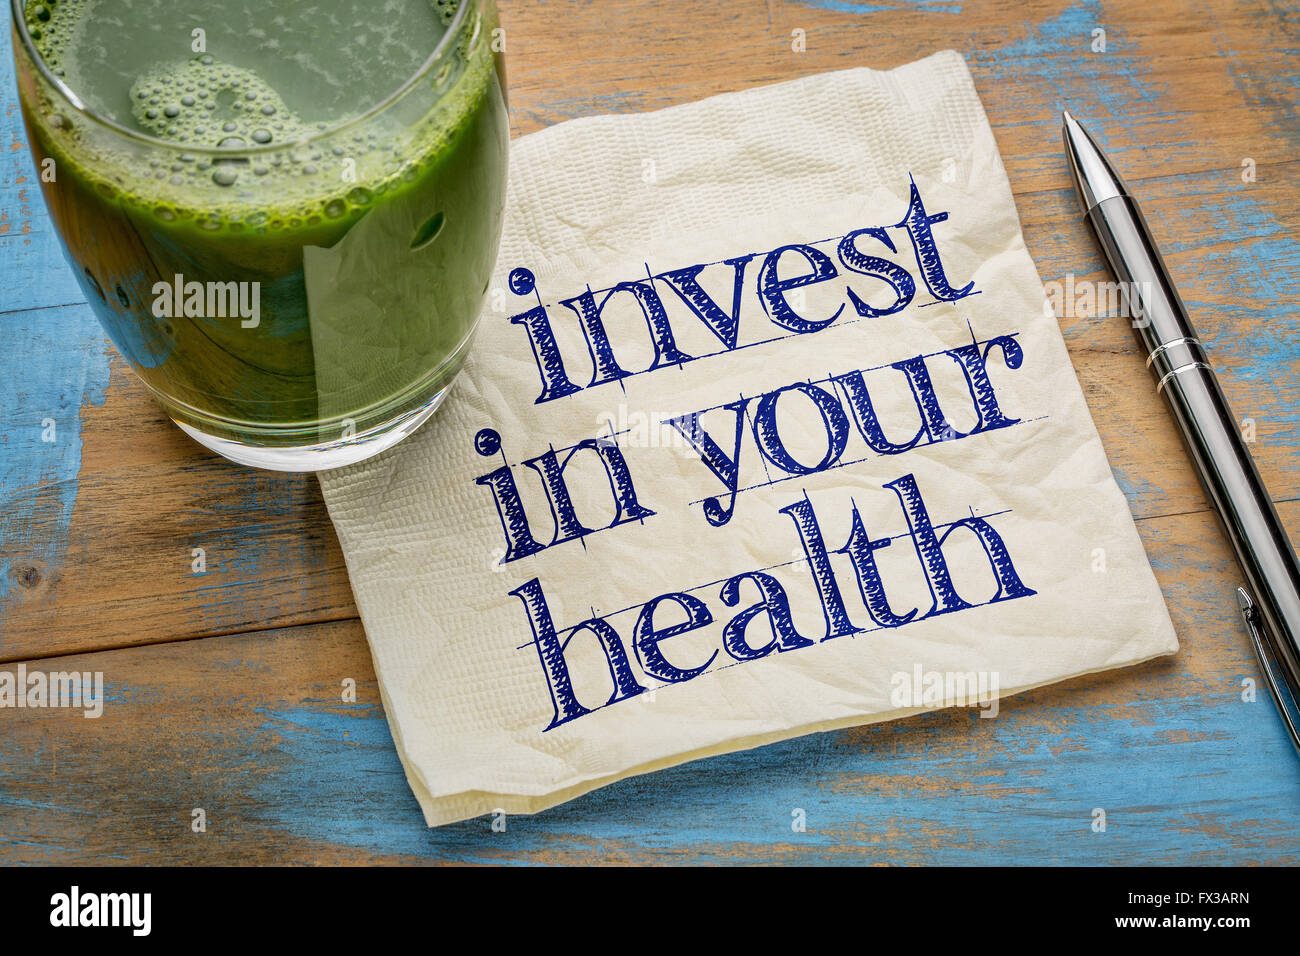 investieren Sie in Ihre Gesundheit Beratung oder Erinnerung - Handschrift auf einer Serviette mit einem Glas frisch, grün, Gemüsesaft Stockfoto